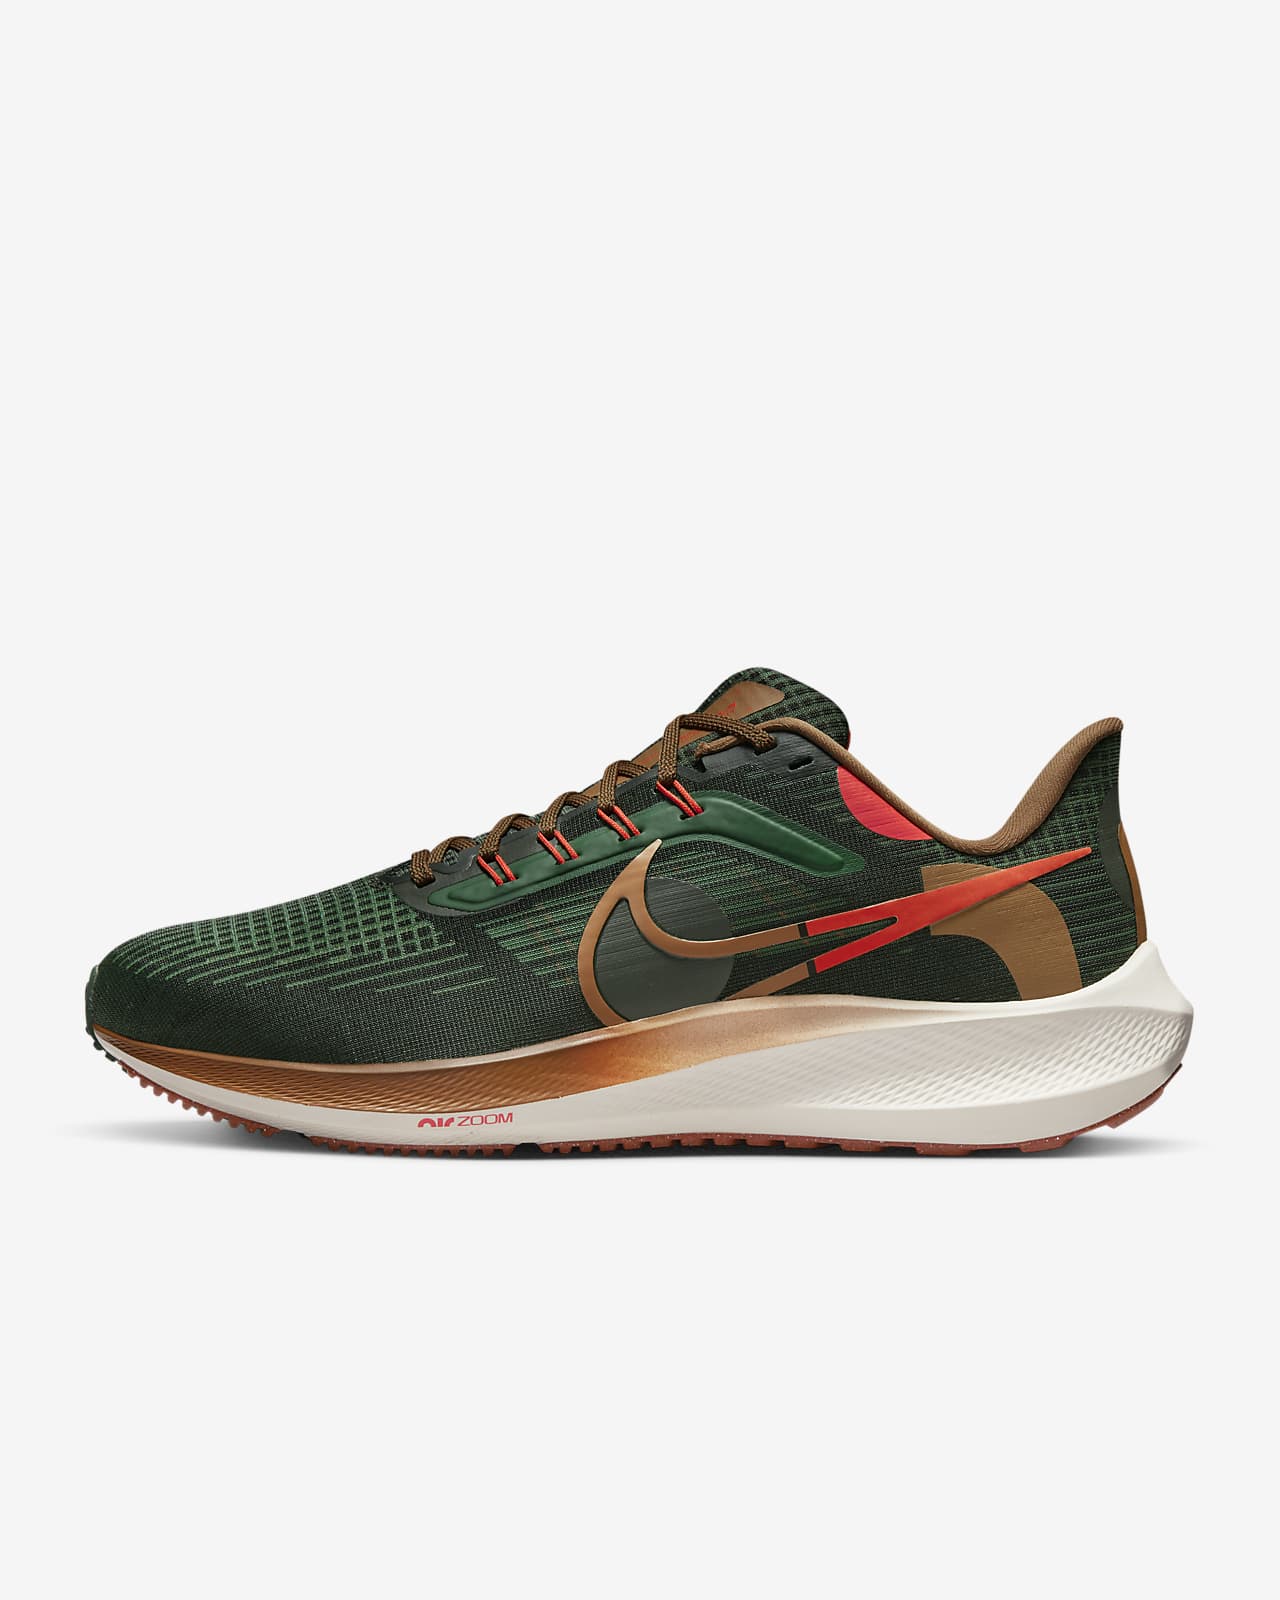 Ανδρικά παπούτσια για τρέξιμο σε δρόμο Nike Air Zoom Pegasus 39 A.I.R. Hola Lou